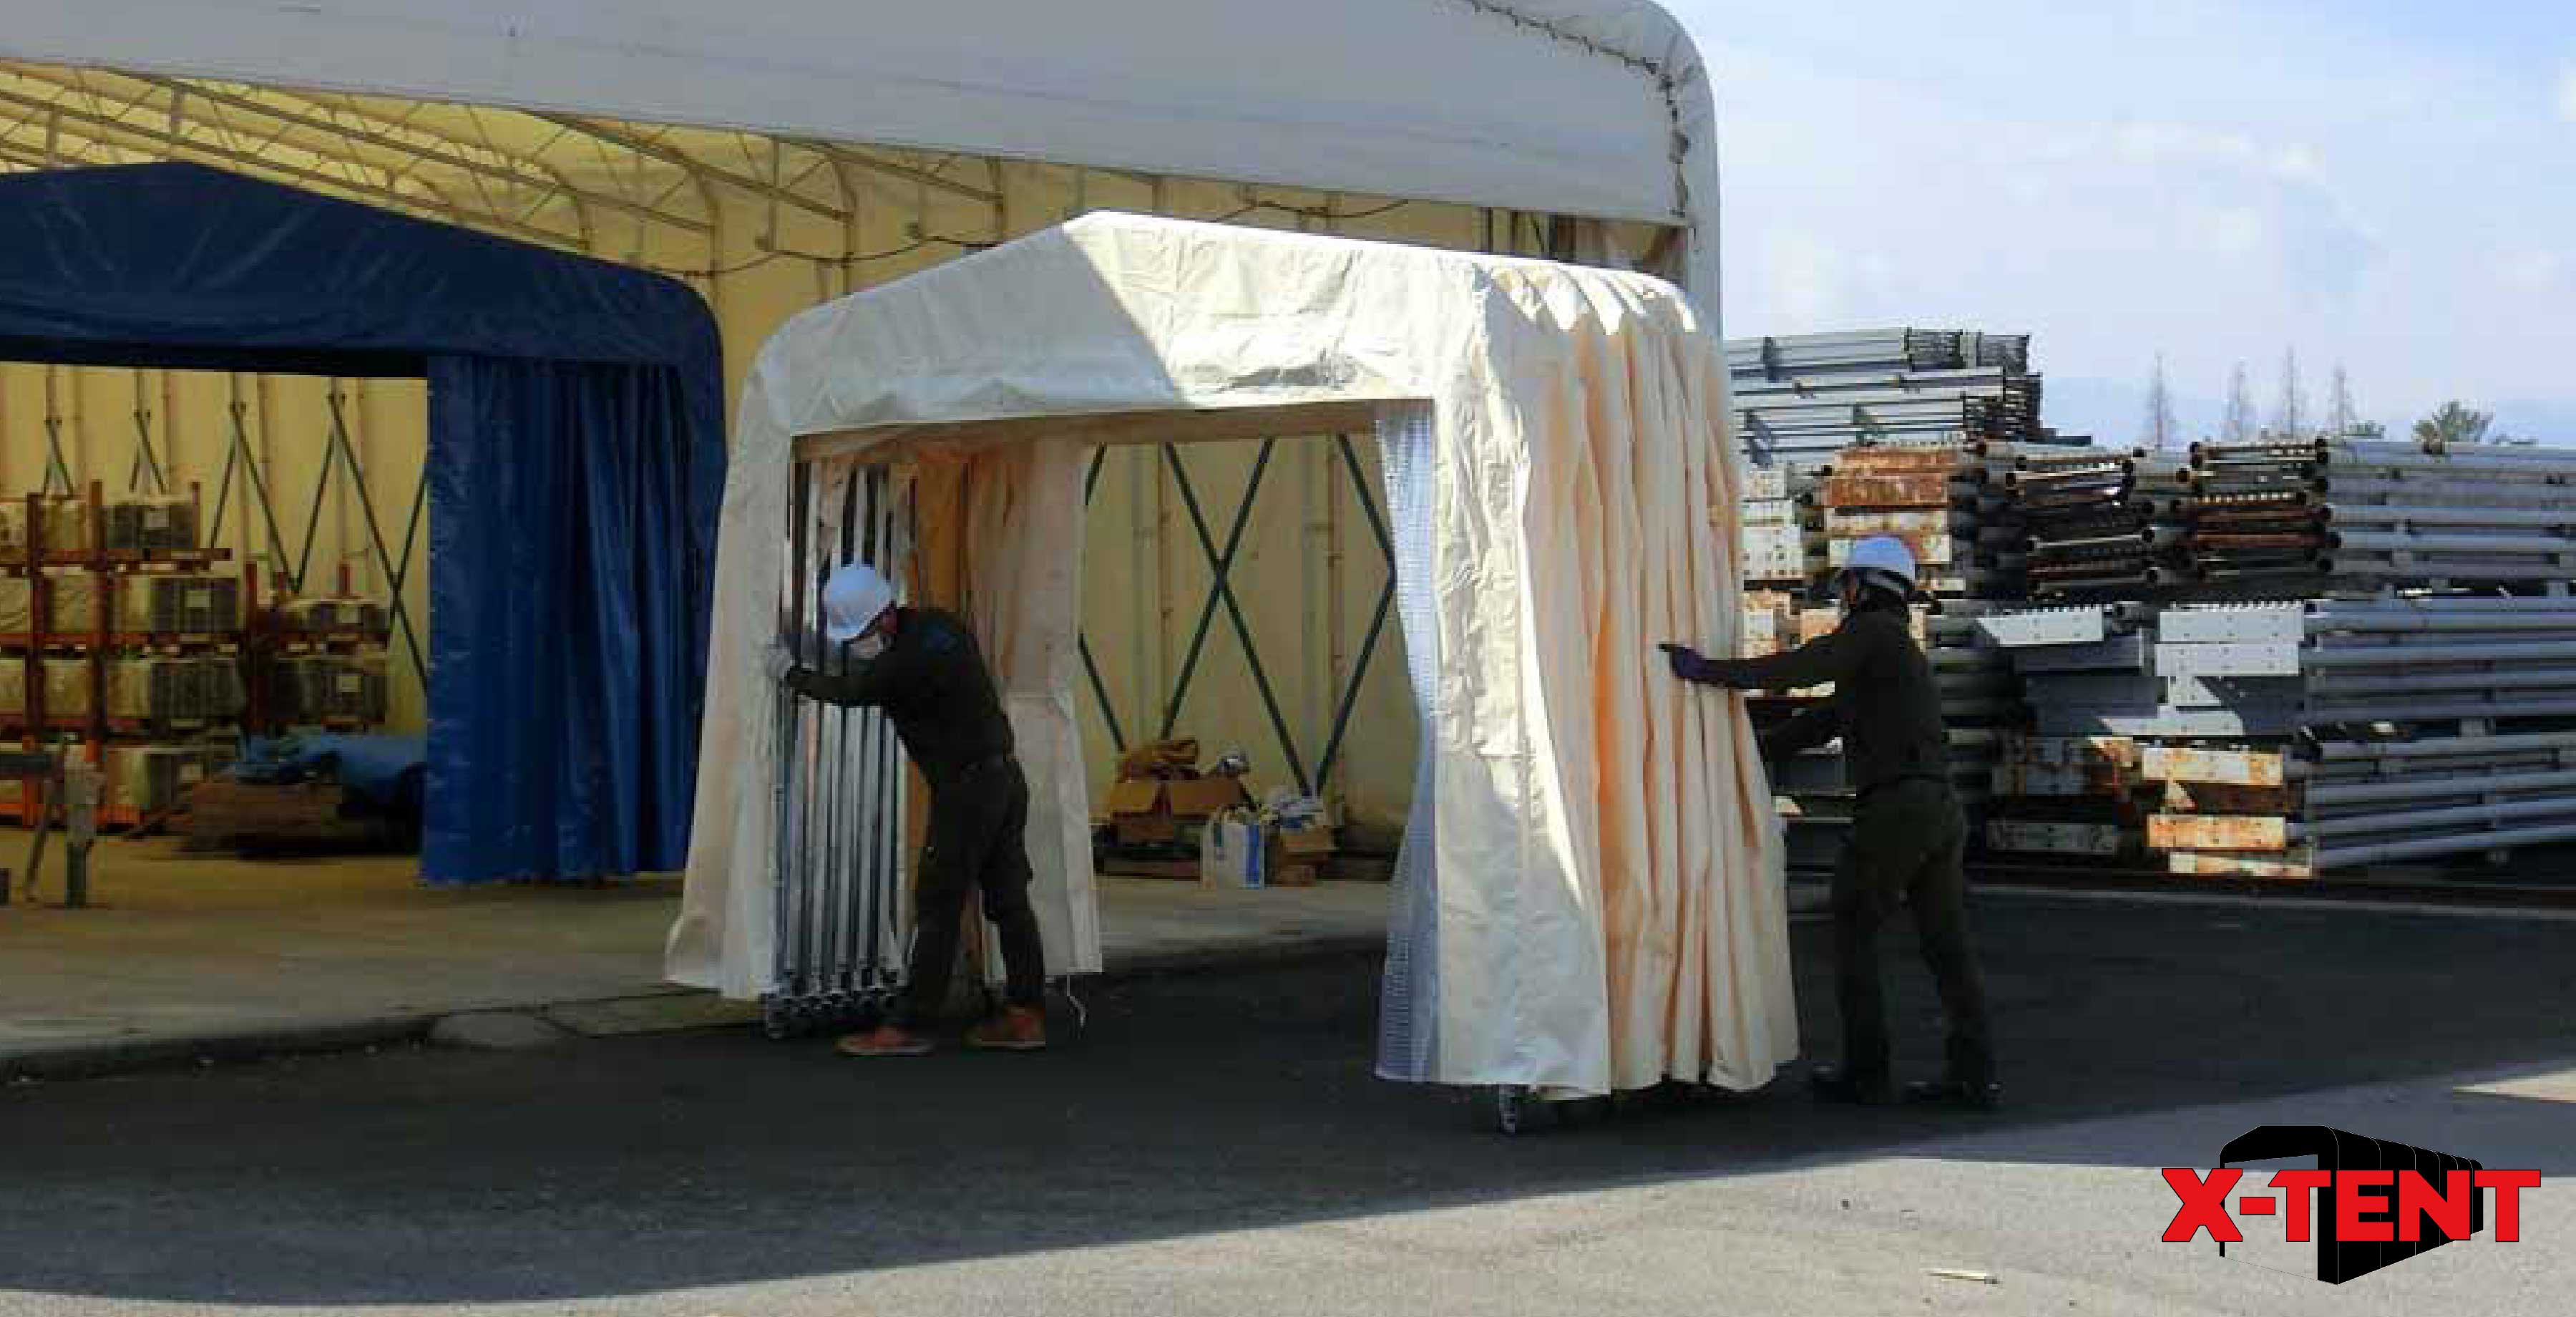 確認申請不要！ジャバラで移動可能な小型テント倉庫がおすすめ